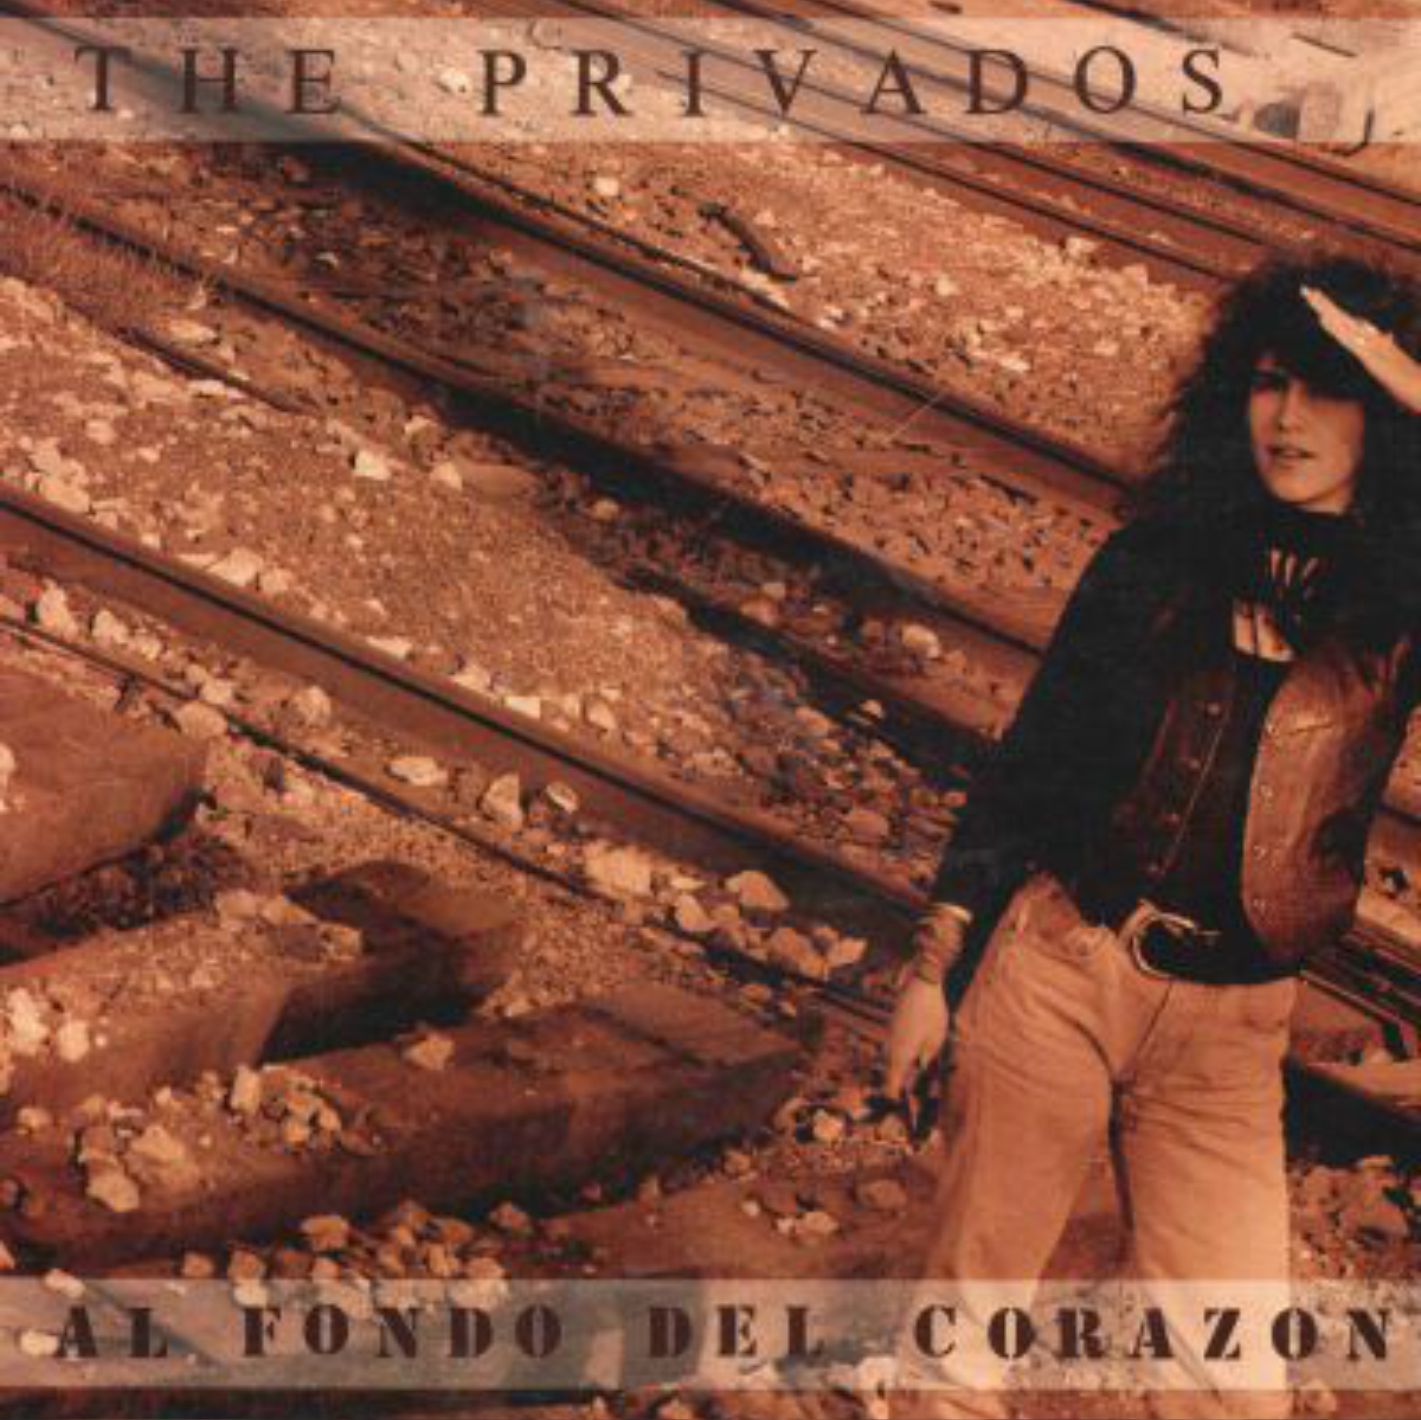 The Privados: Al Fondo del Corazón. Canciones de Grupos y Artistas Españoles de los Años 90's.